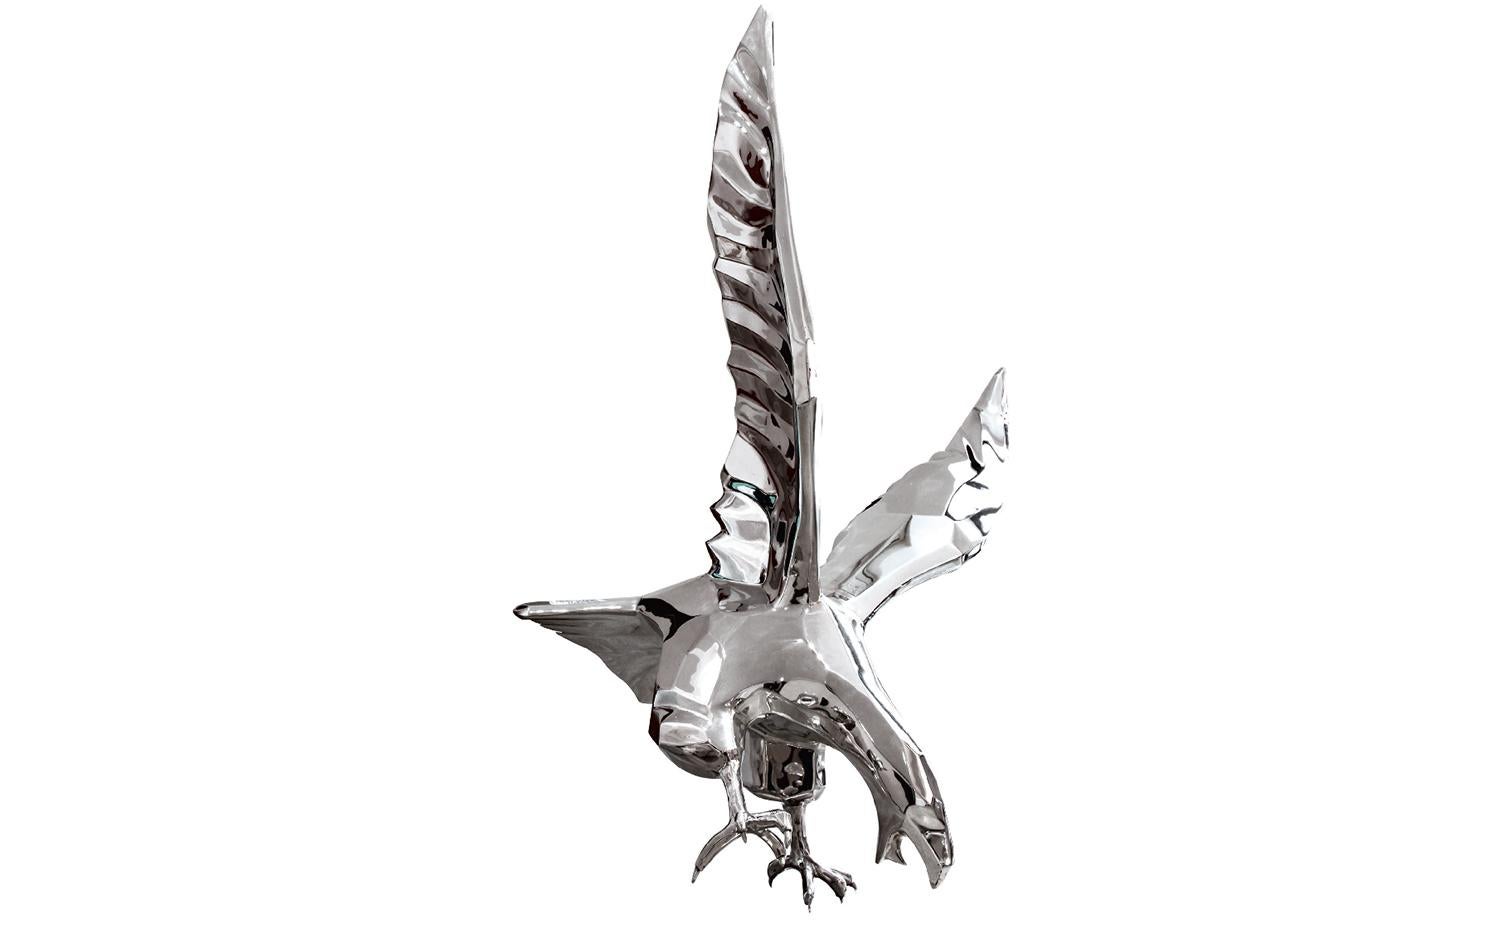 Eagle - Sculpture by Richard Orlinski